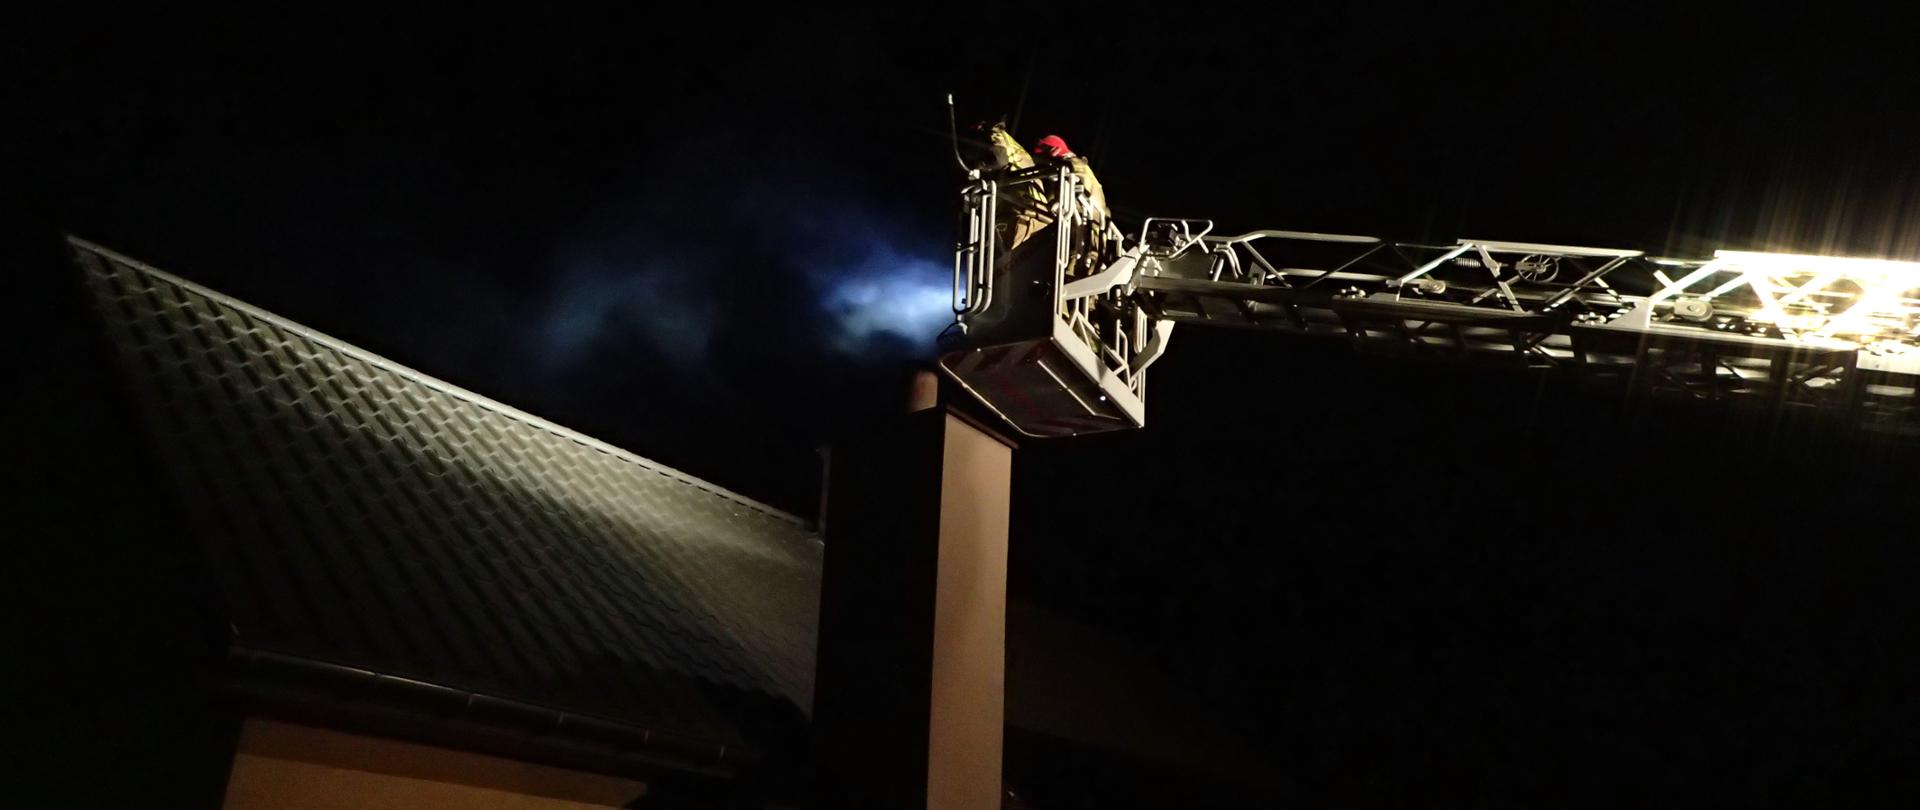 2 ratowników w koszu drabiny mechanicznej gaszących pożar sadzy w przewodzie kominowym, pora nocna